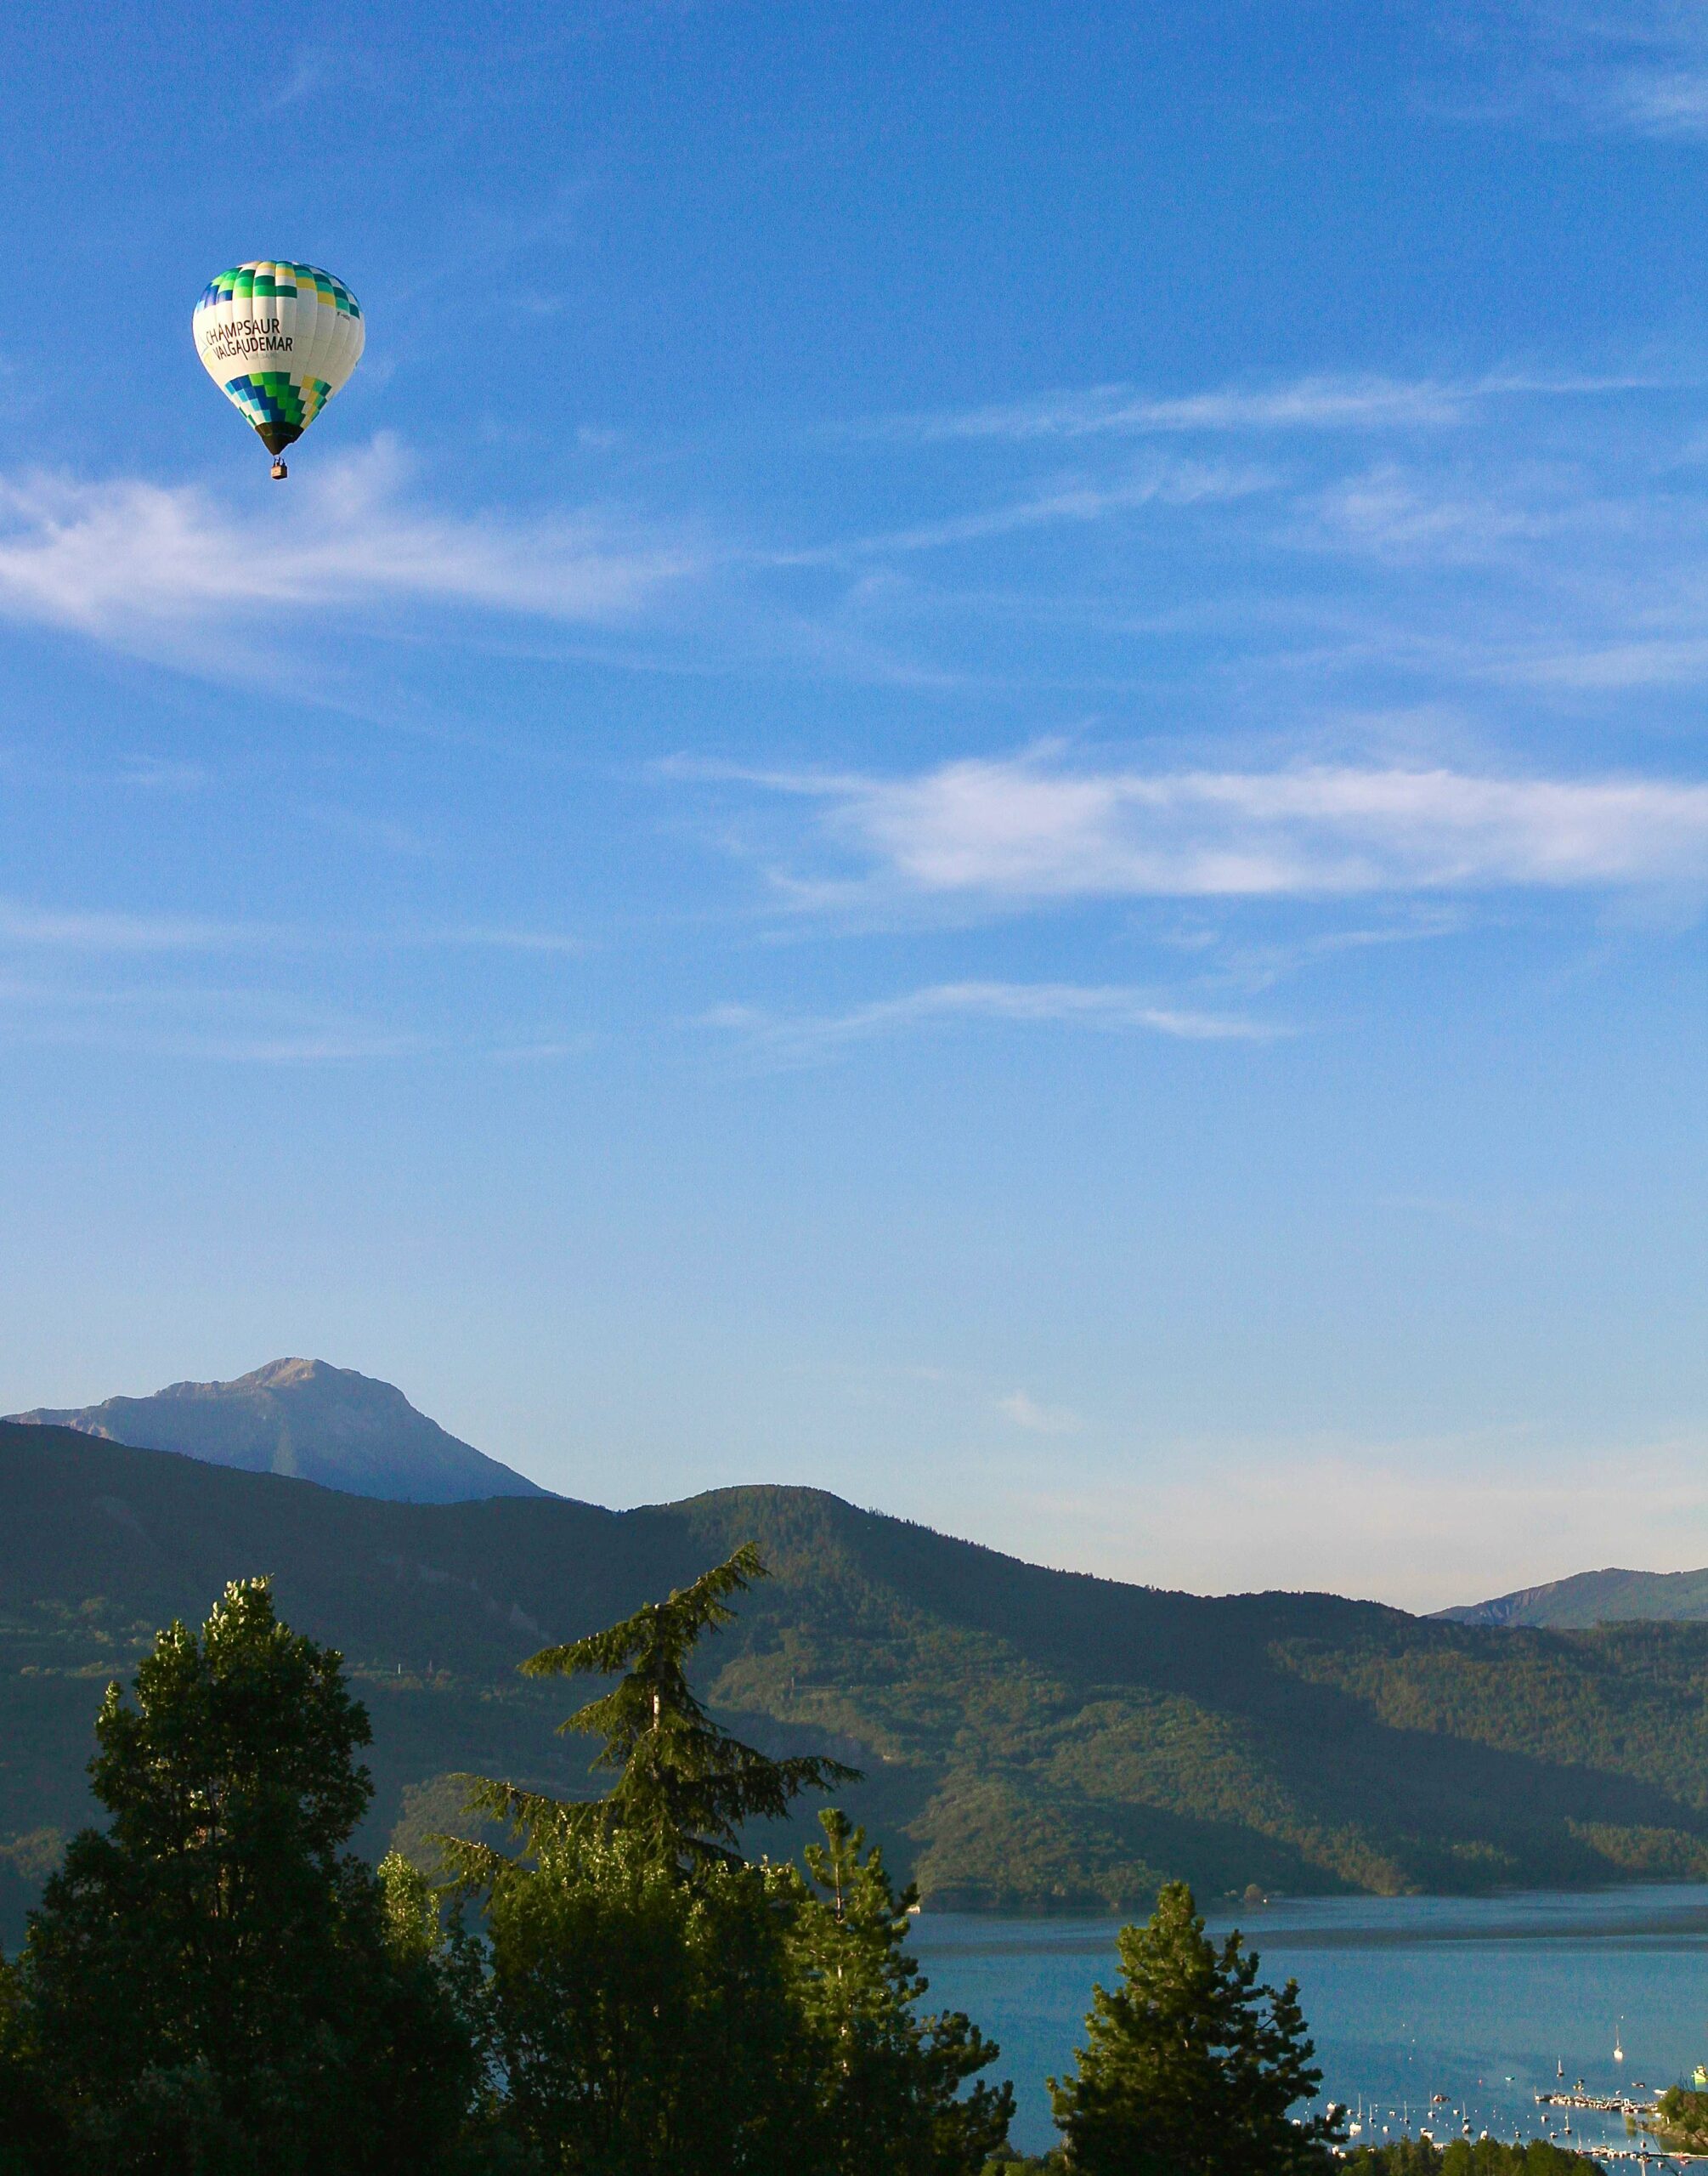 Vol de Montgolfière dans le ciel bleu du Lac de Serre-Ponçon et Montagnes des Alpes du Sud